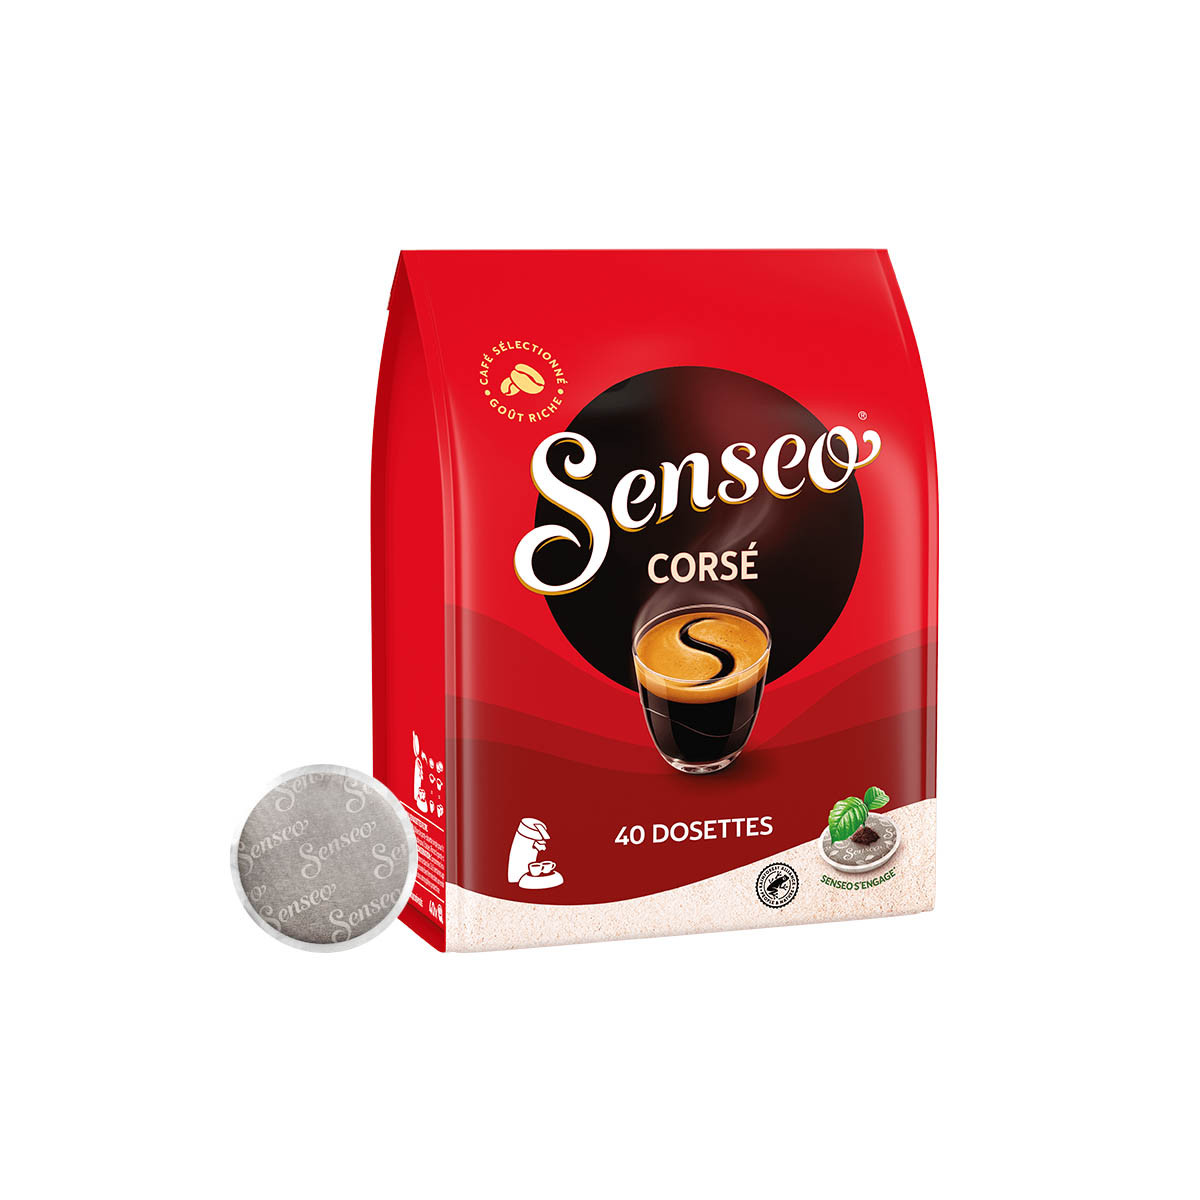 Senseo Corsé - 40 dosettes pour Senseo à 5,29 €